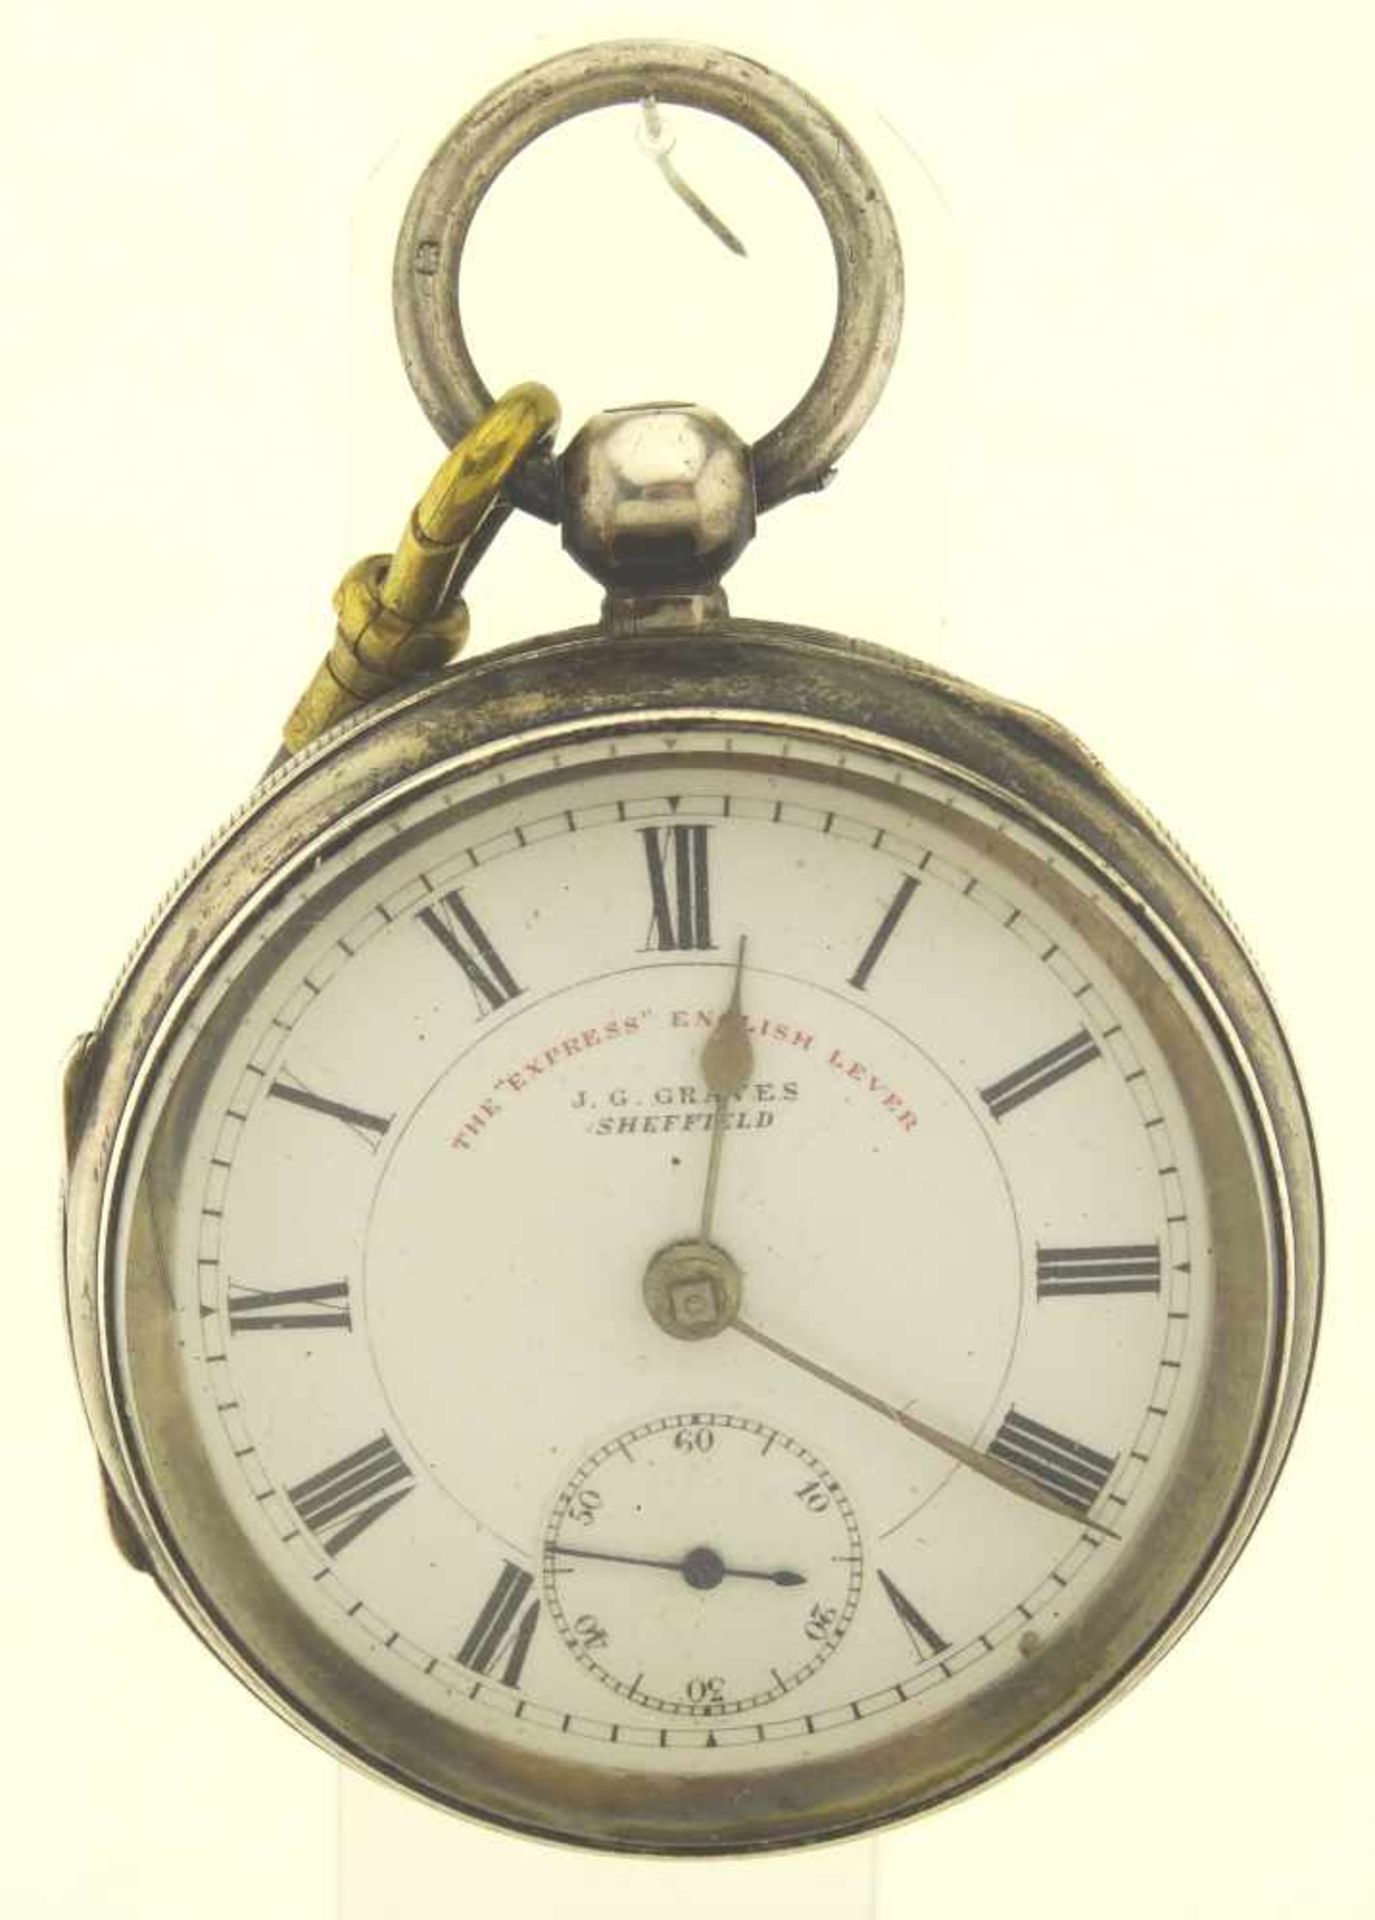 Taschenuhr Silber gepunzt, von J.G.Graves England Sheffield, Ankerhemmung, verharzt, Unruhwelle